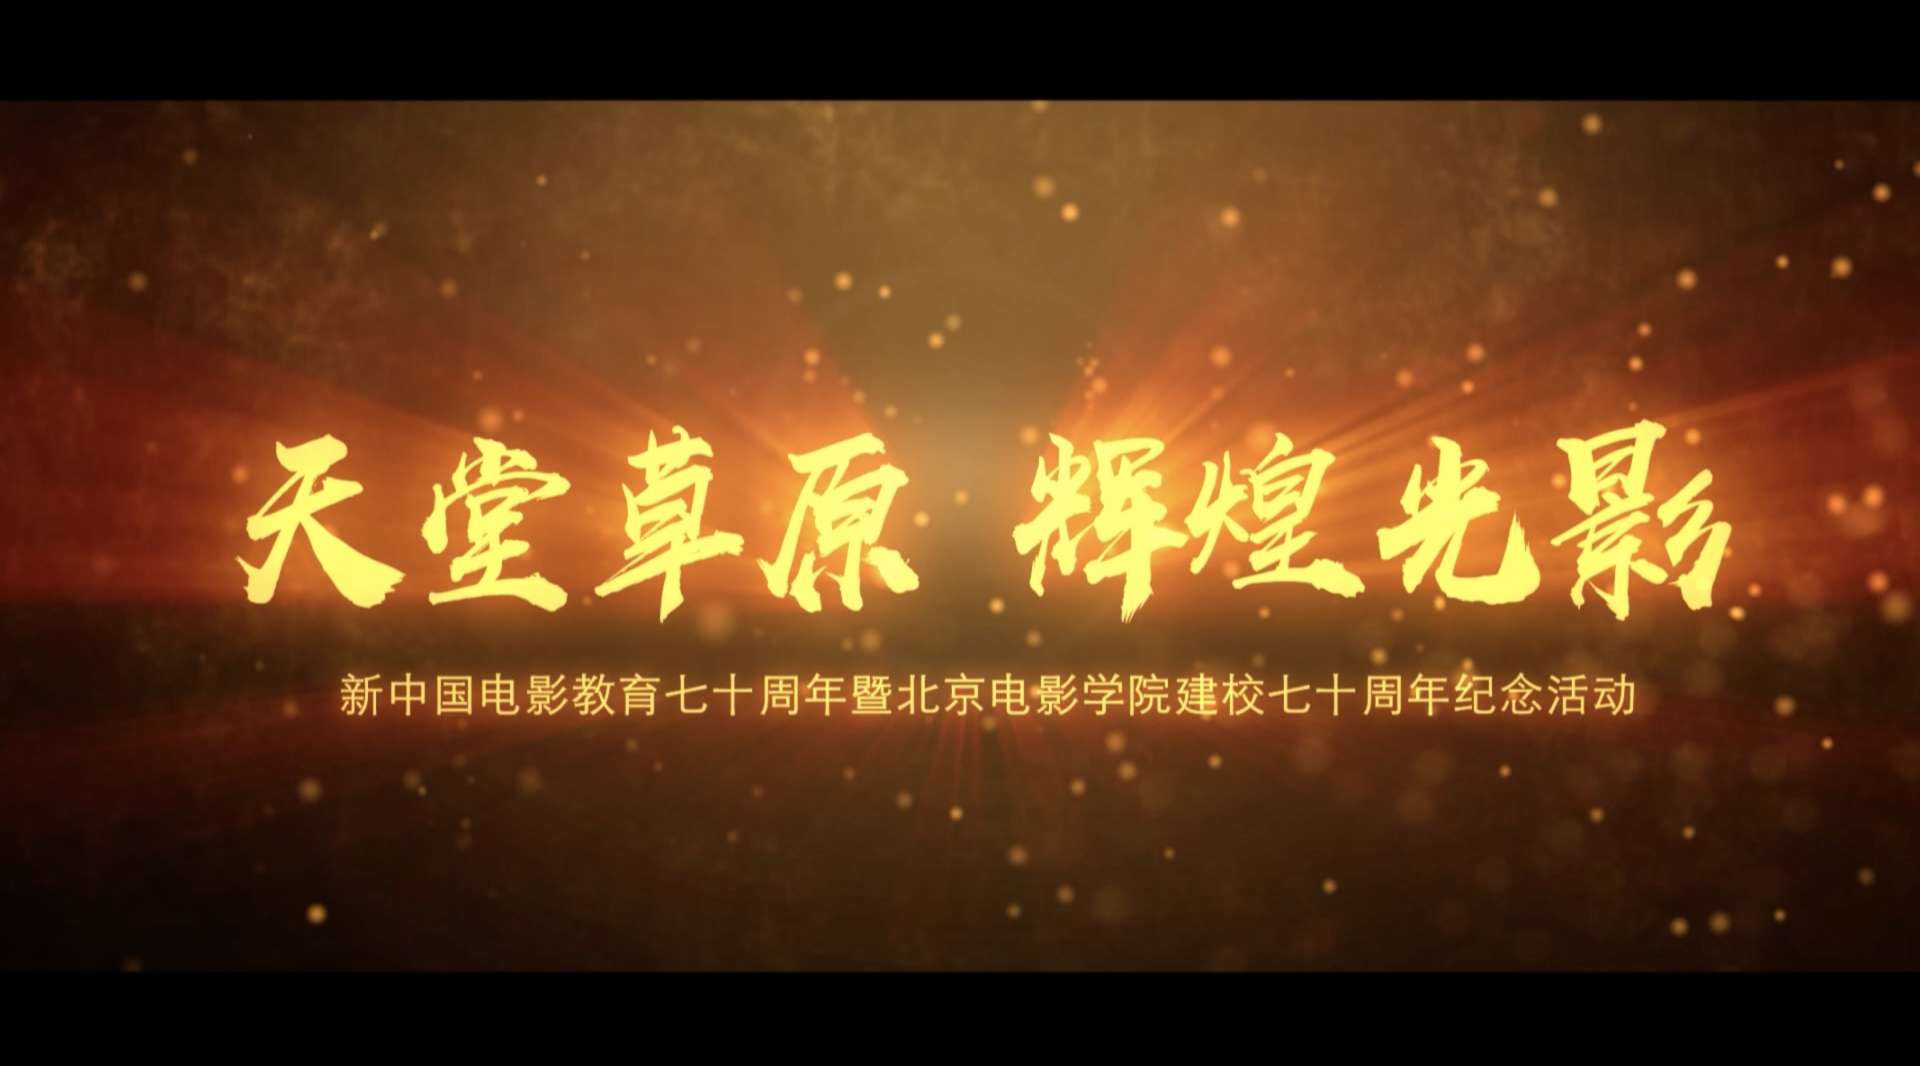 《天堂草原 辉煌光影》北京电影学院建校七十周年纪念